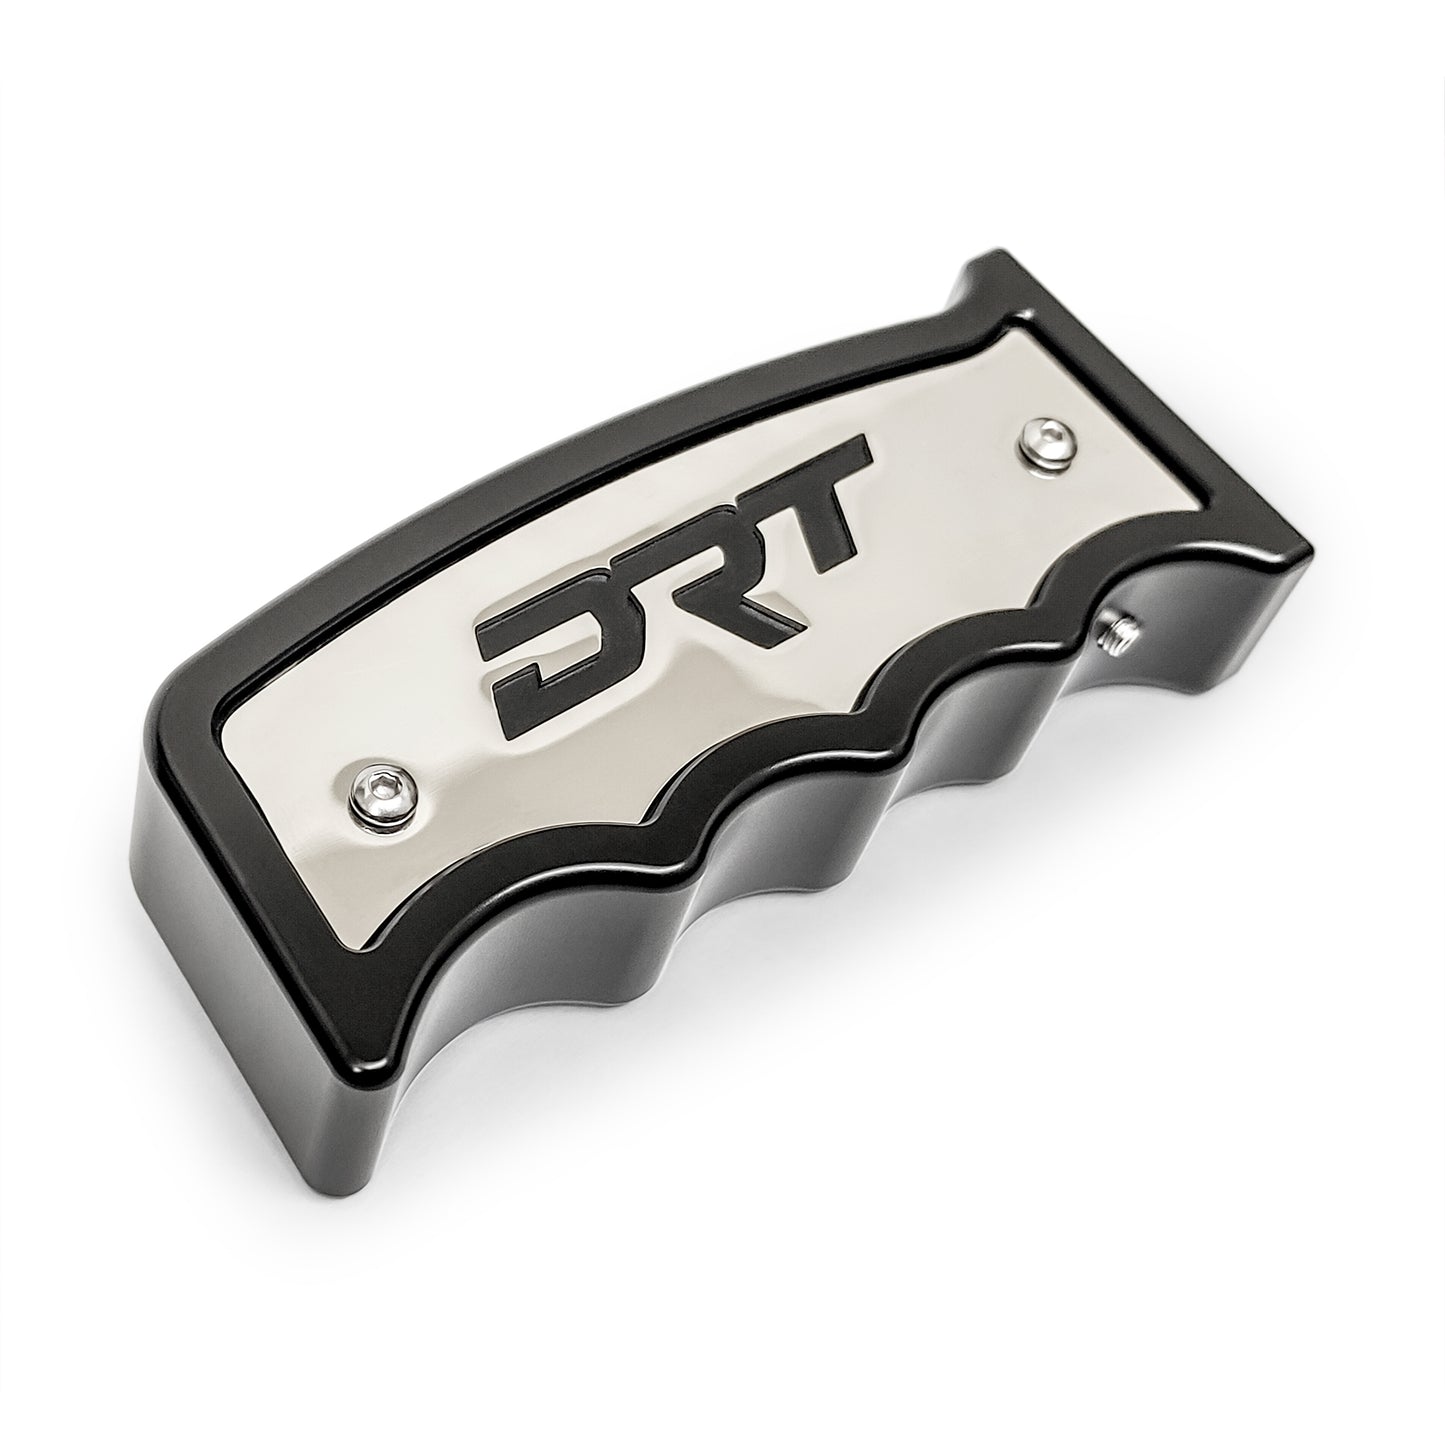 DRT Motorsports Grip Shifter V2.0 Side view